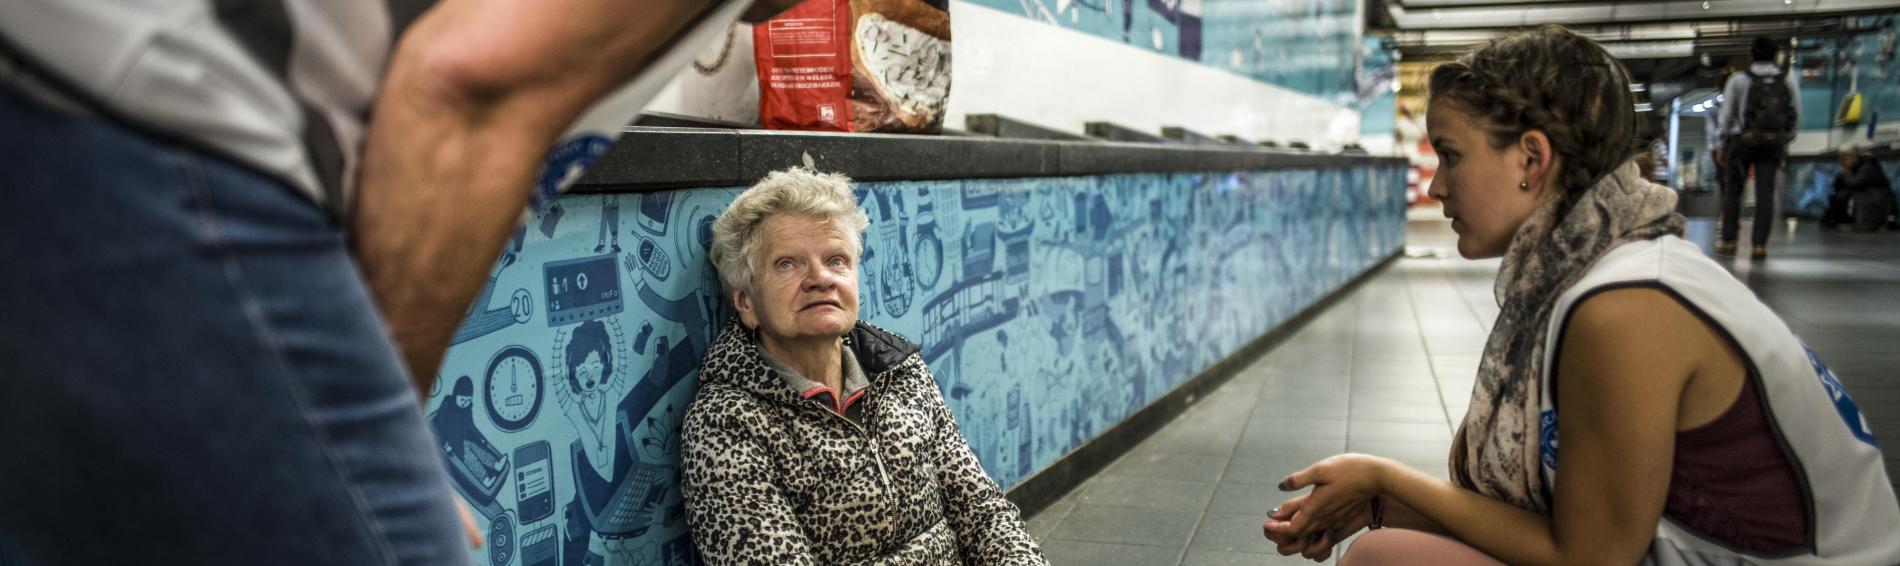 Dans les couloirs de la Gare Centrale, deux bénévoles de Médecins du Monde discutent avec un femme assise par terre.